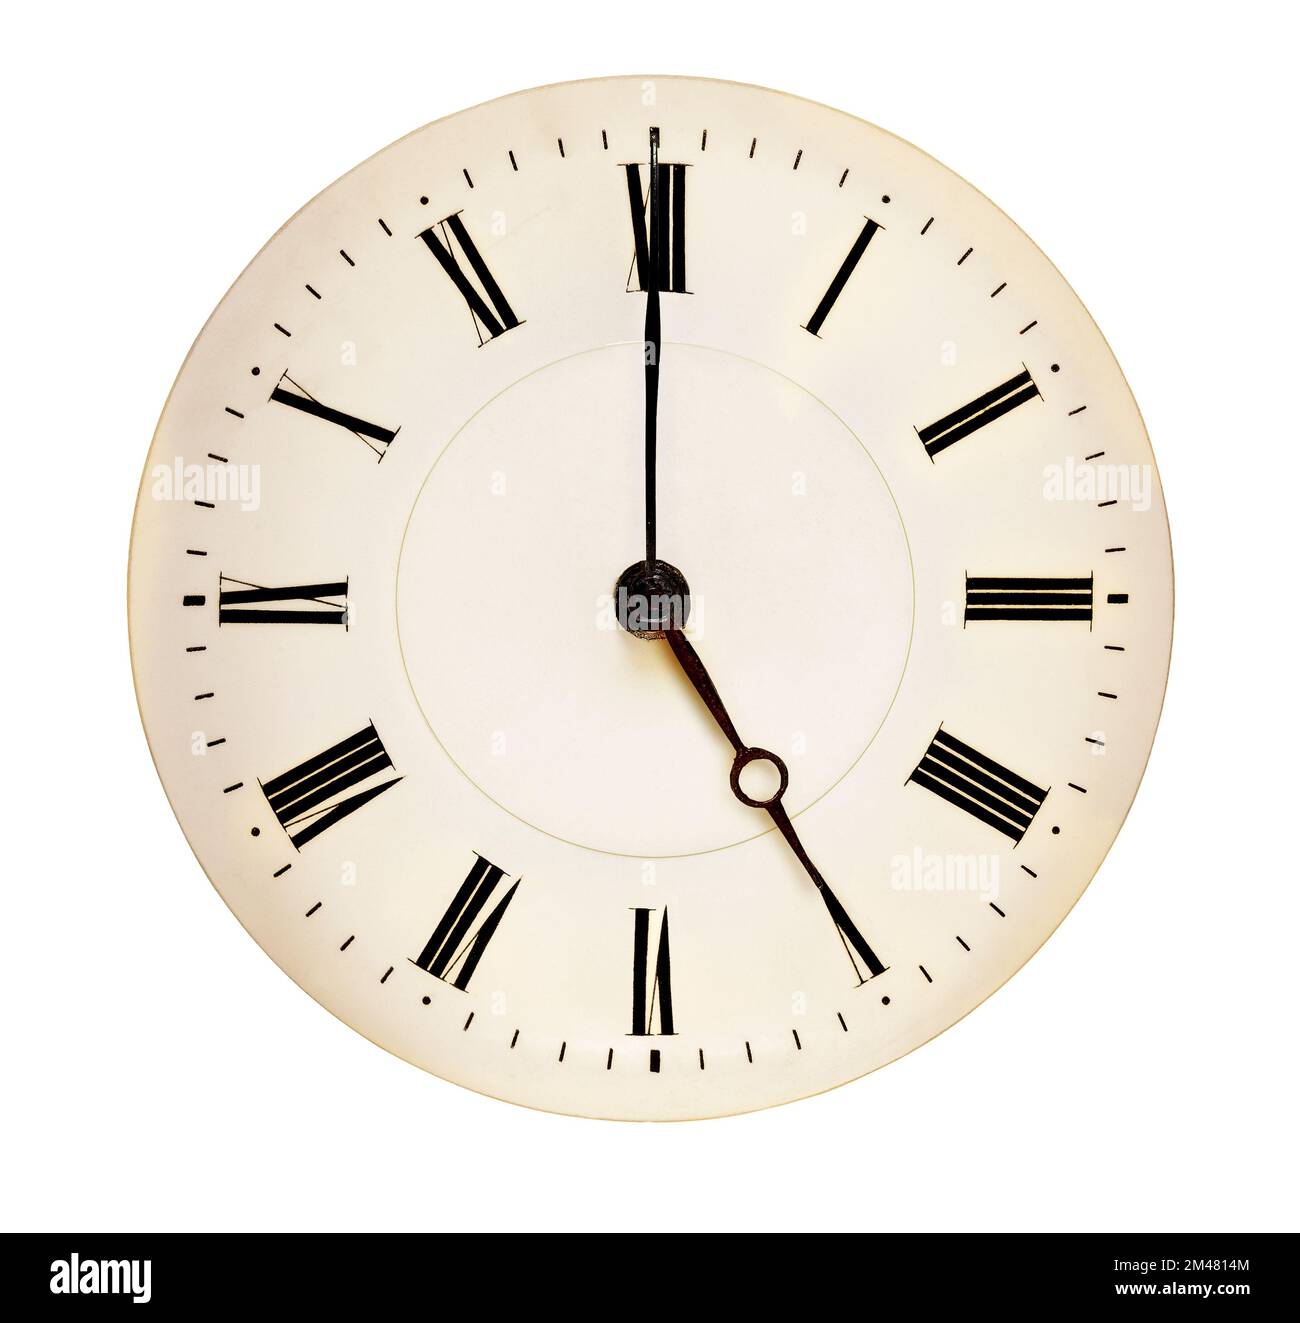 Antico orologio volto che punta a fiveo'clock isolato su sfondo bianco. Concetto di tempo del tè Foto Stock